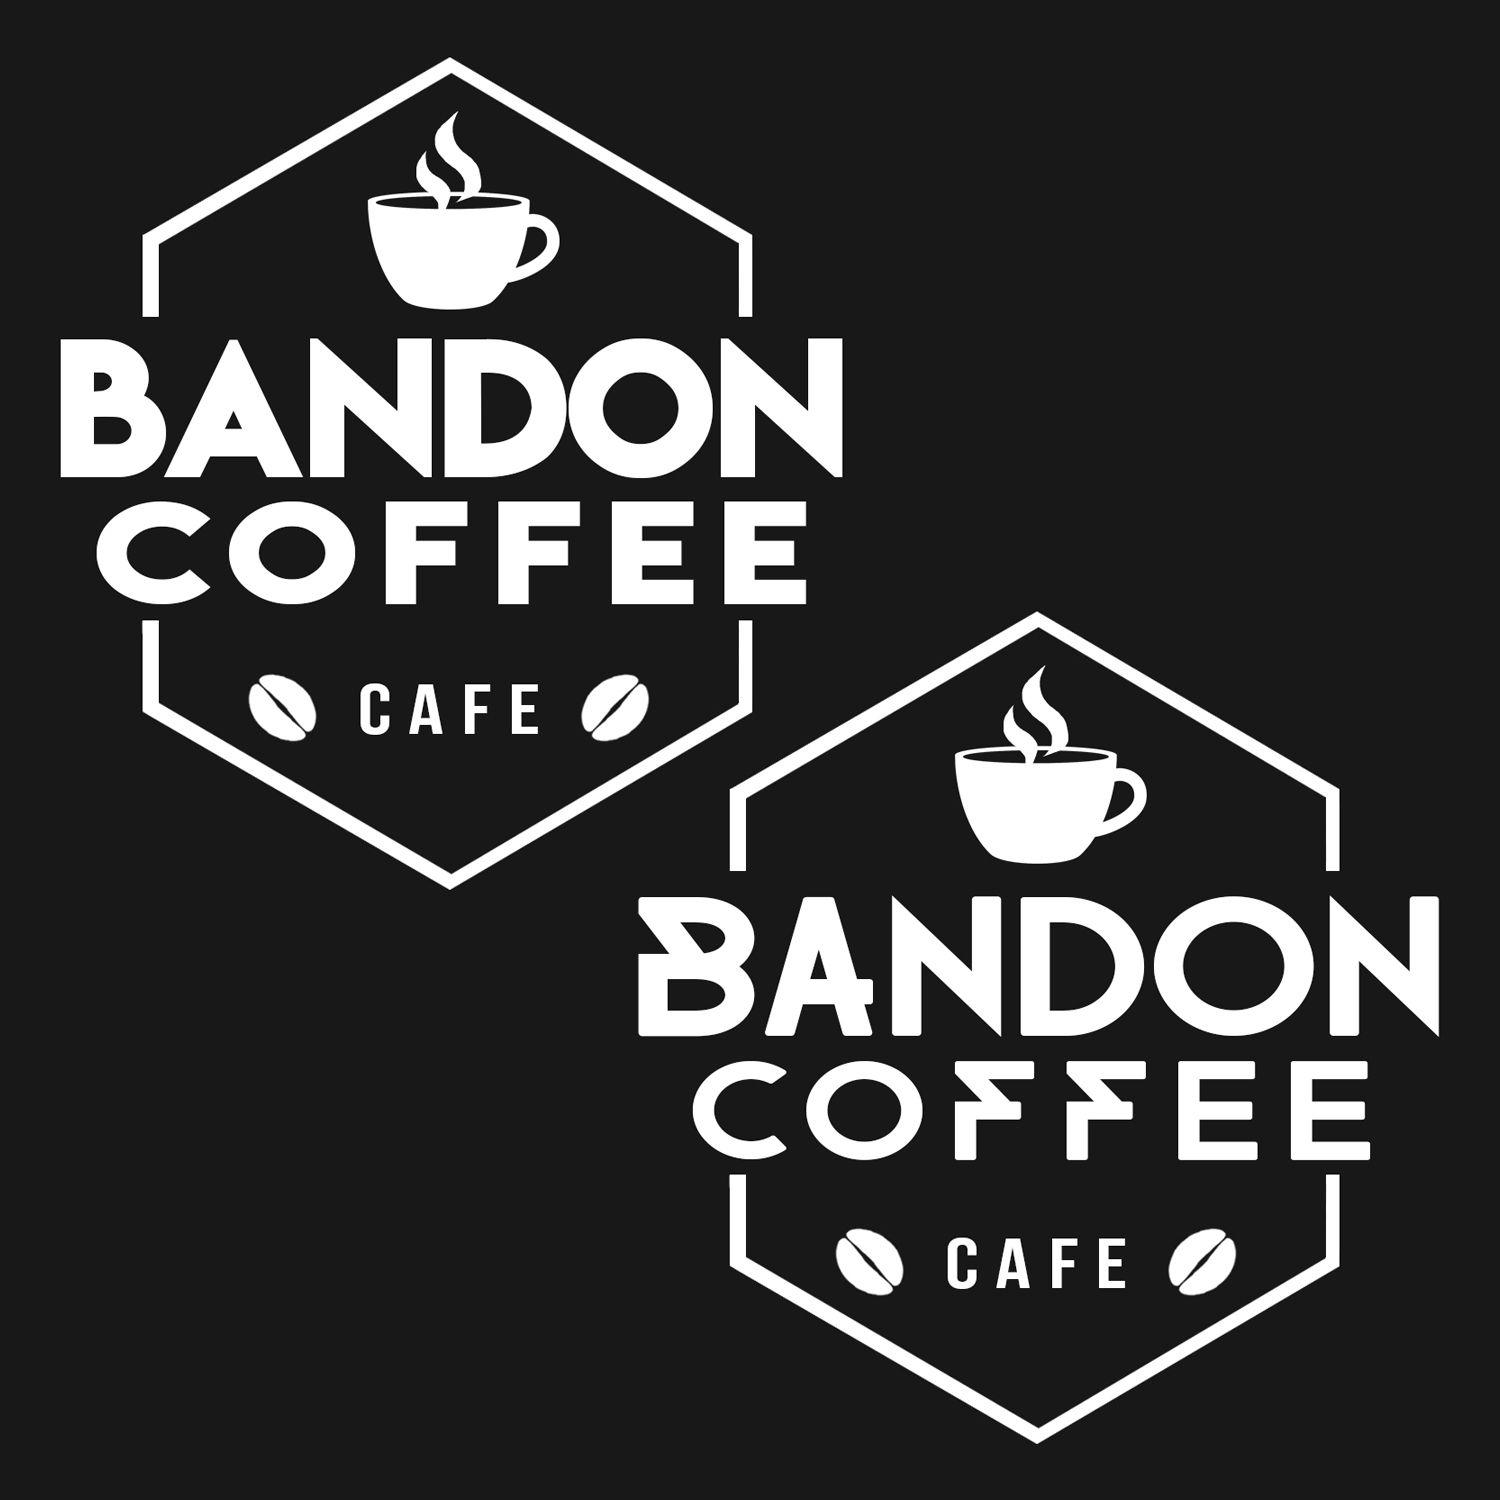 Bandon Logo - Bold, Conservative, Coffee Shop Logo Design for Bandon Coffee Cafe ...